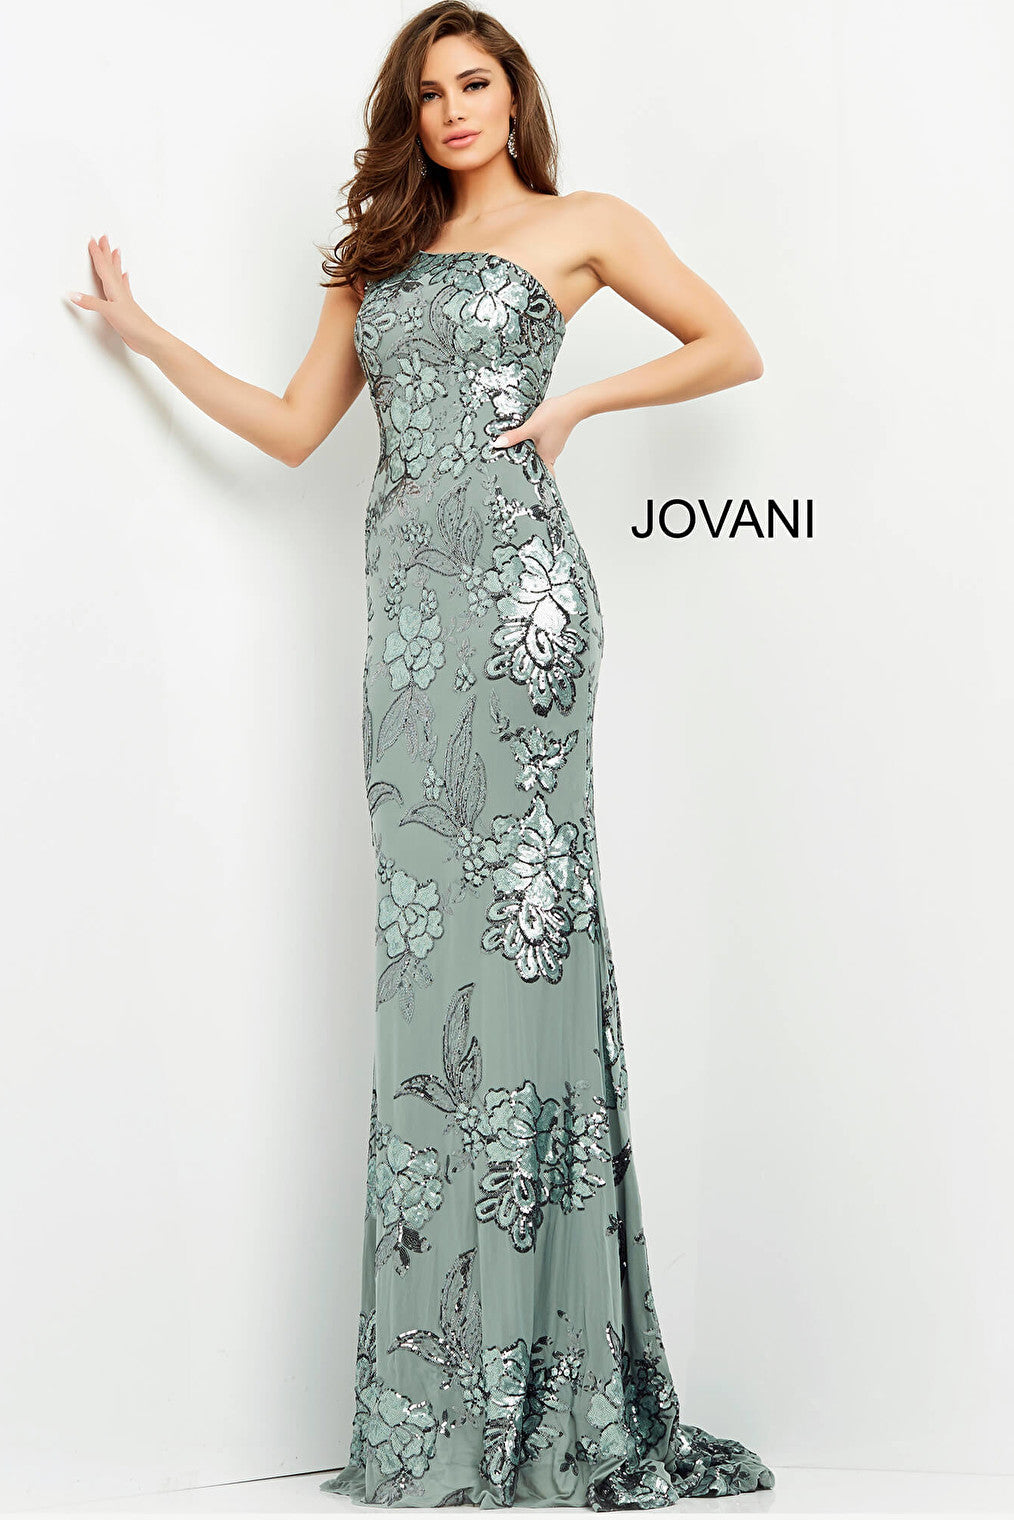 Sequin embellished sage dress Jovani 04331